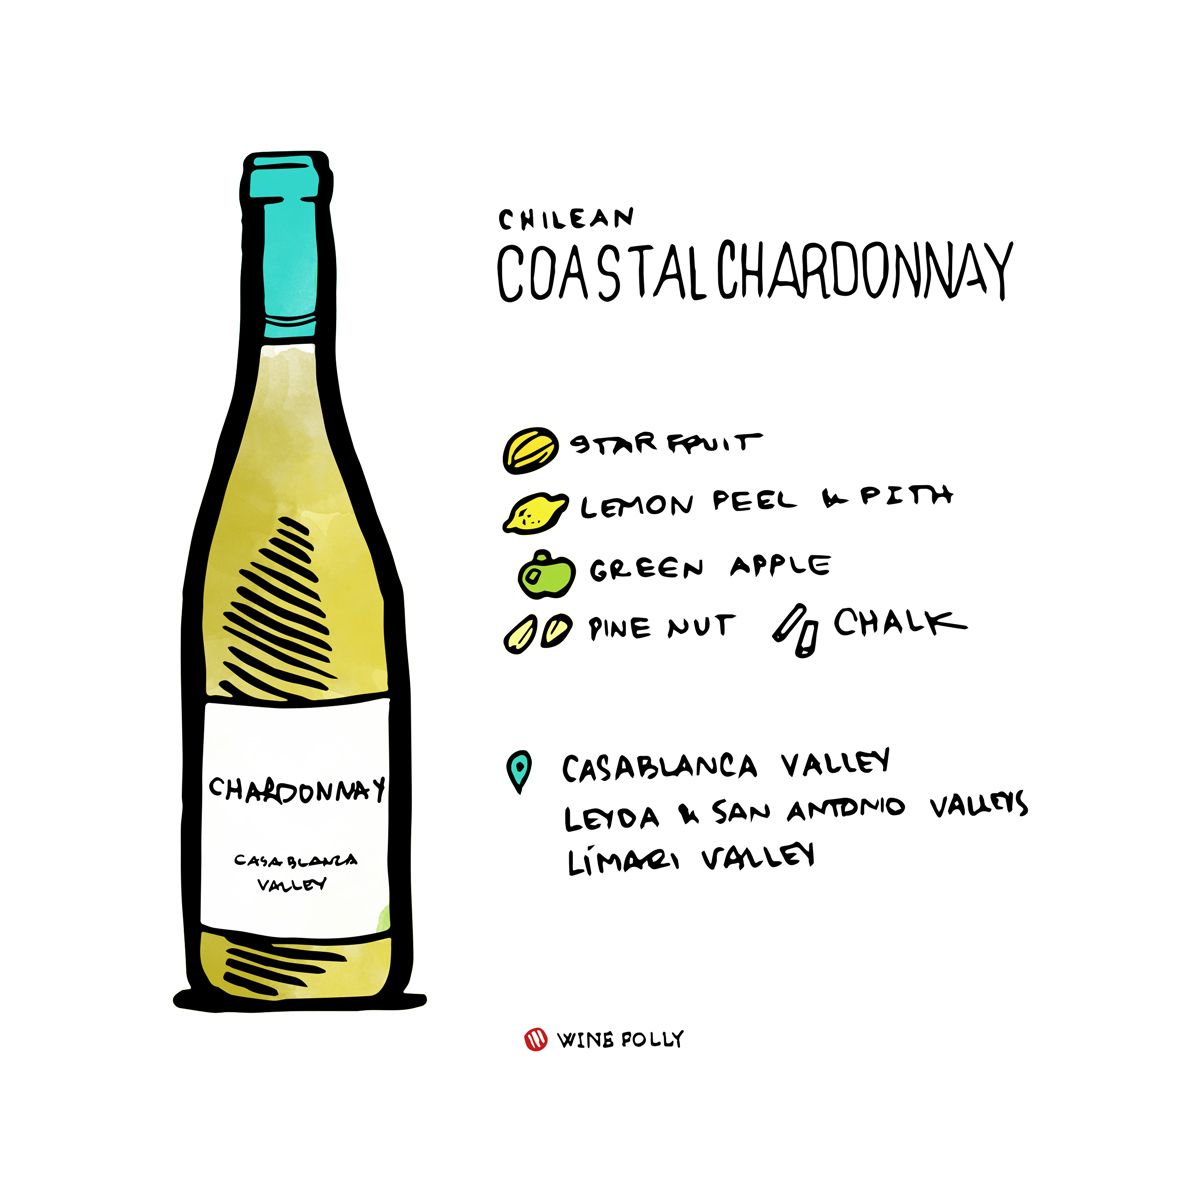 Chardonnay costero de las regiones de Chile - ilustración de Wine Folly